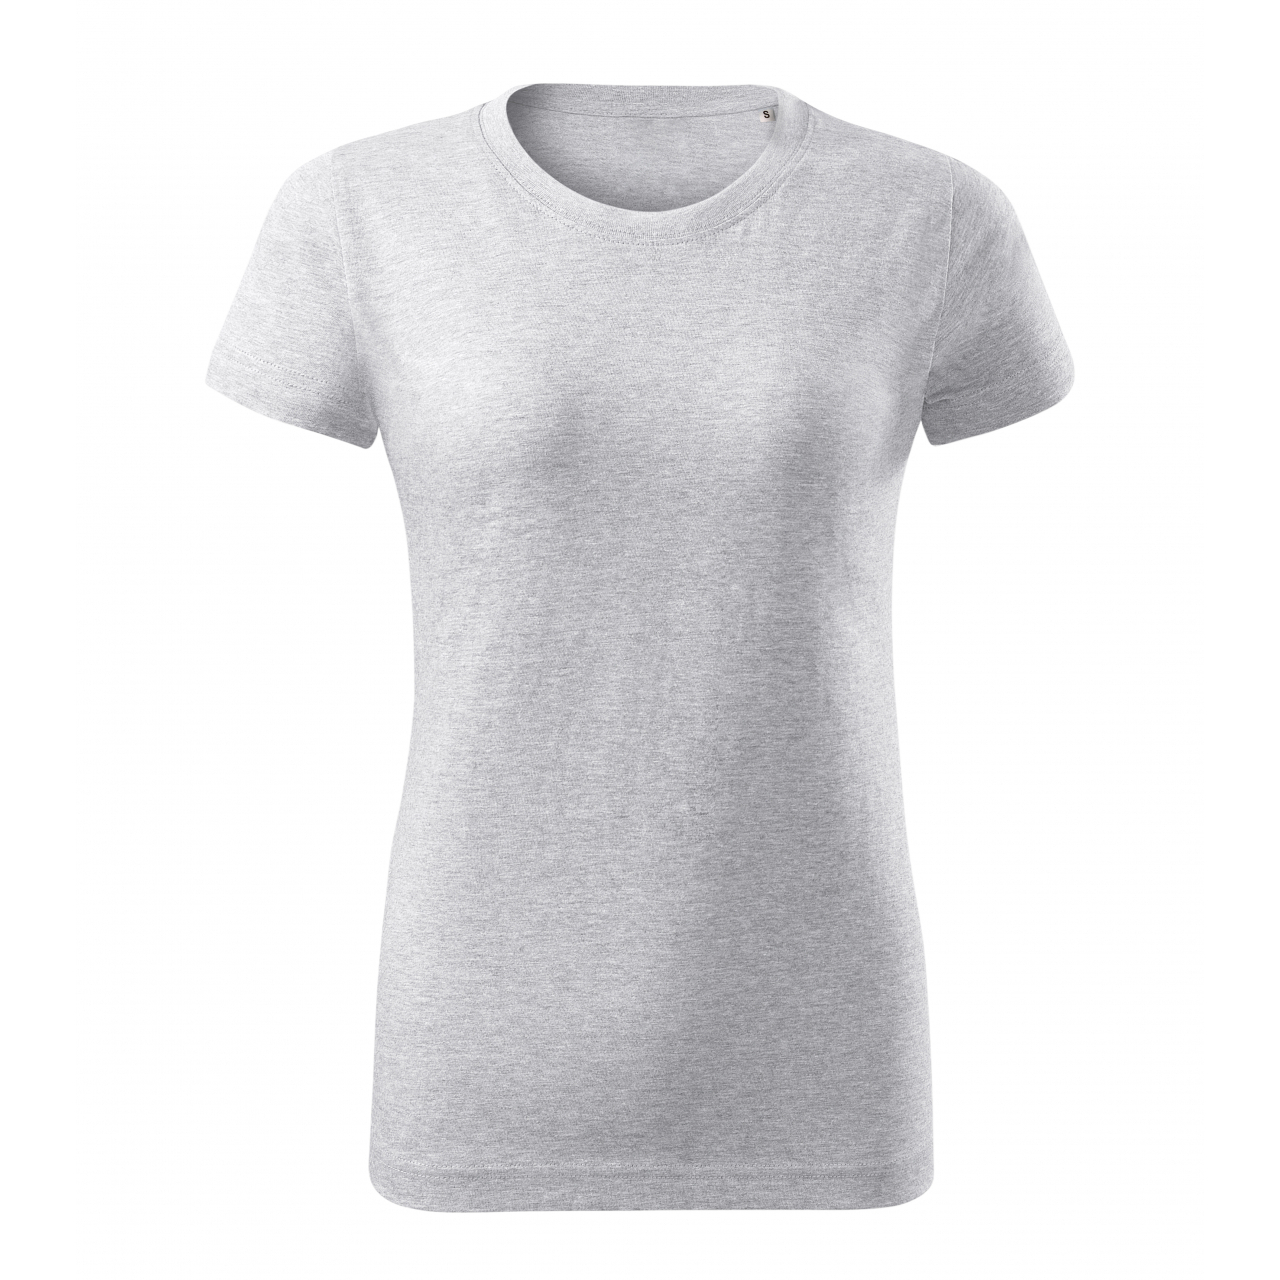 Tričko dámské Malfini Basic Free - světle šedé, XXL